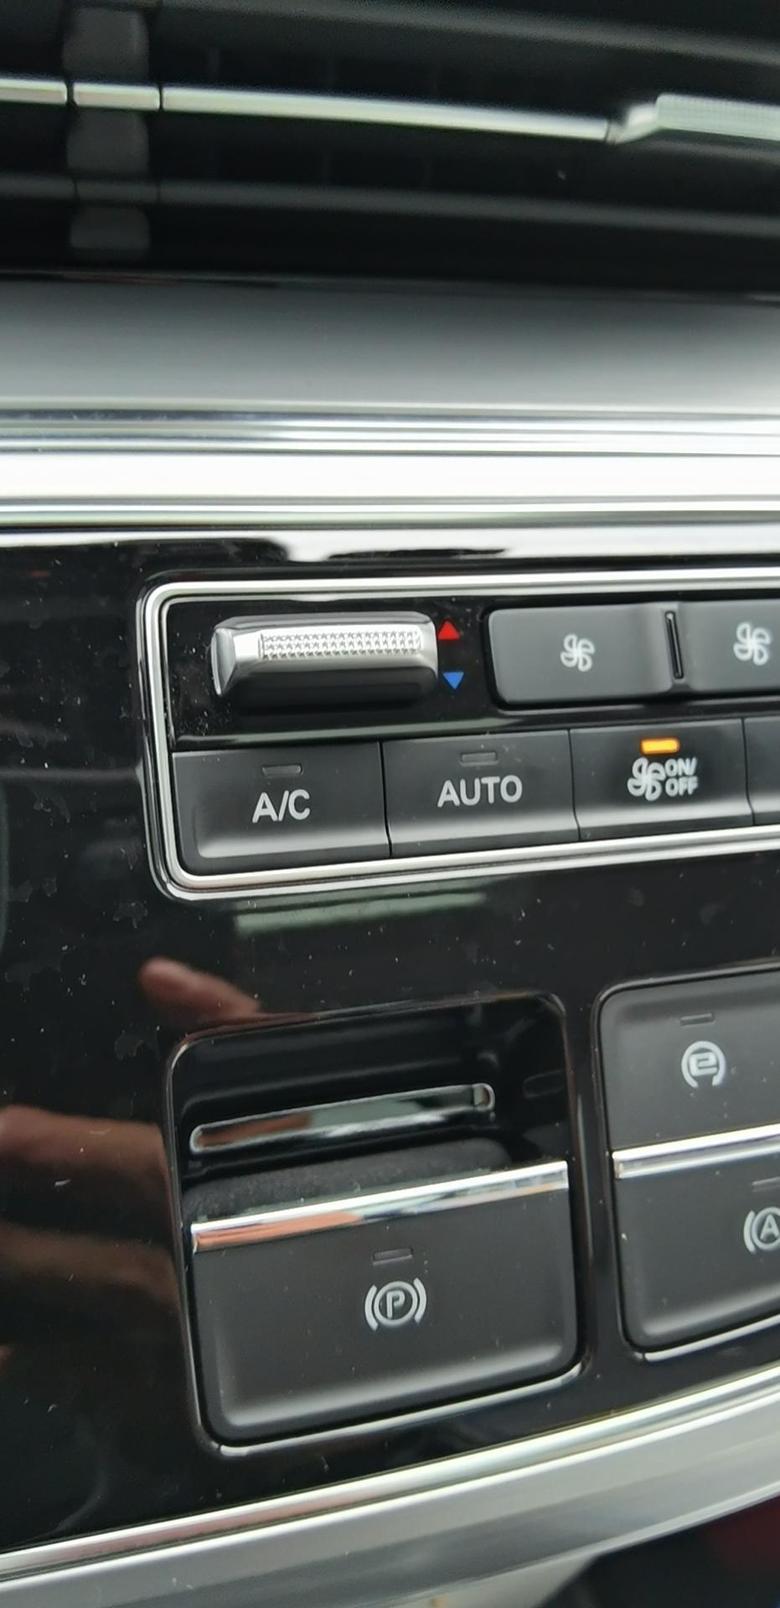 荣威imax8下雨天气冷了，自动空调开暖风，关了AC，AUTO竟然也关了，AC和AUTUO同步的，那是不是意味着暖风需要手动调节温度和风量？